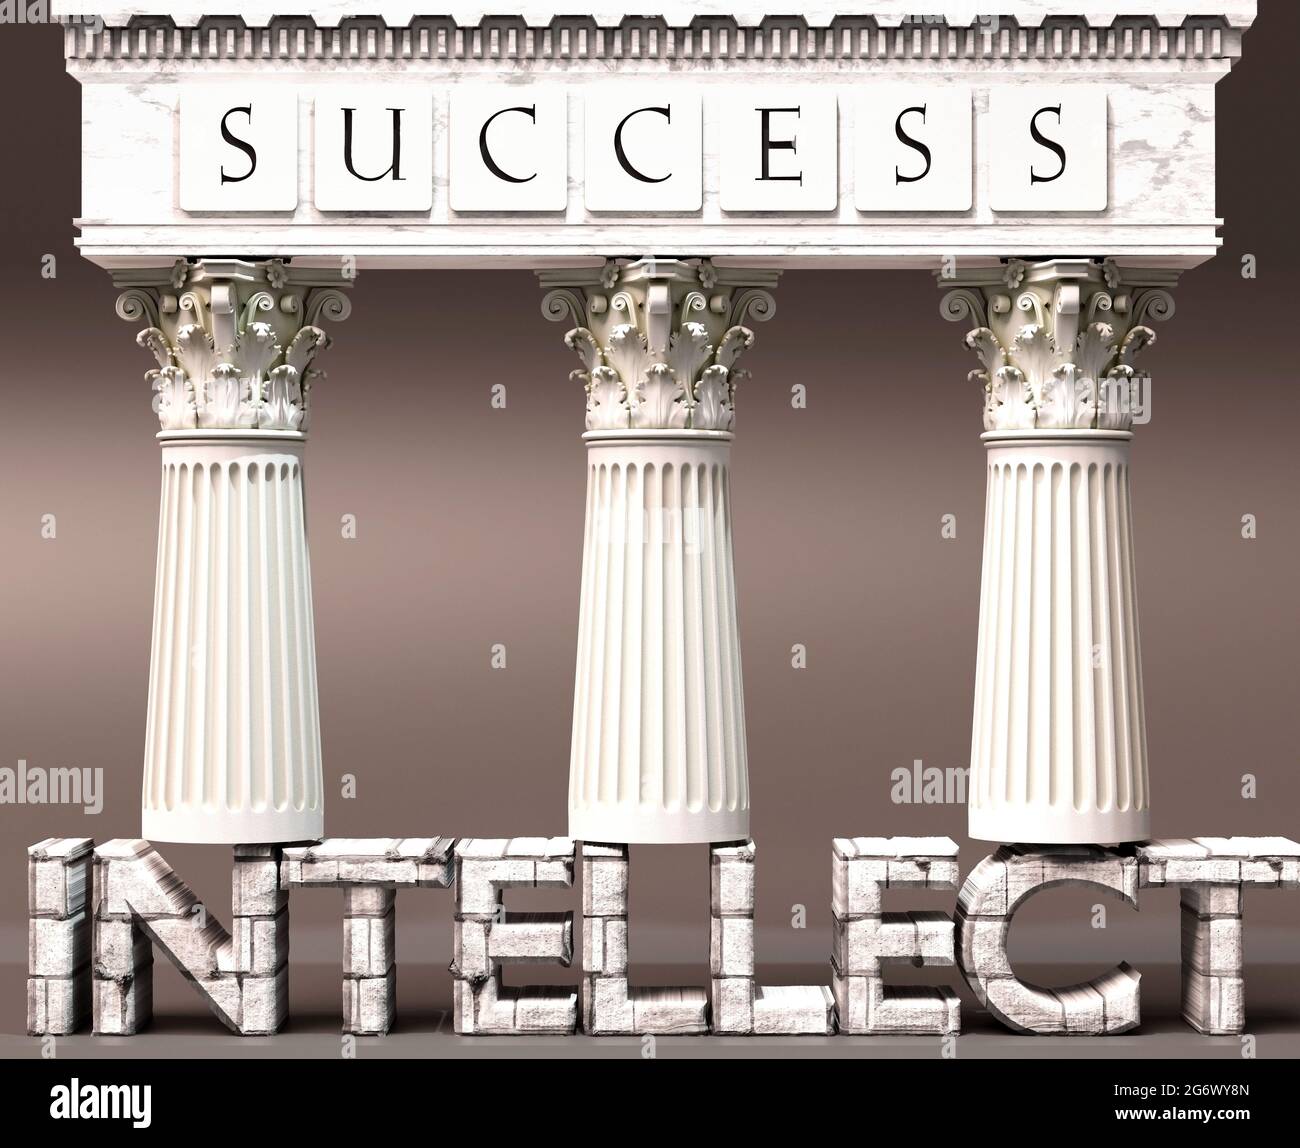 L'intelletto come fondamento del successo - simbolizzato da pilastri di successo sostenuti dall'intelletto per mostrare che è essenziale per raggiungere gli obiettivi e l'ach Foto Stock